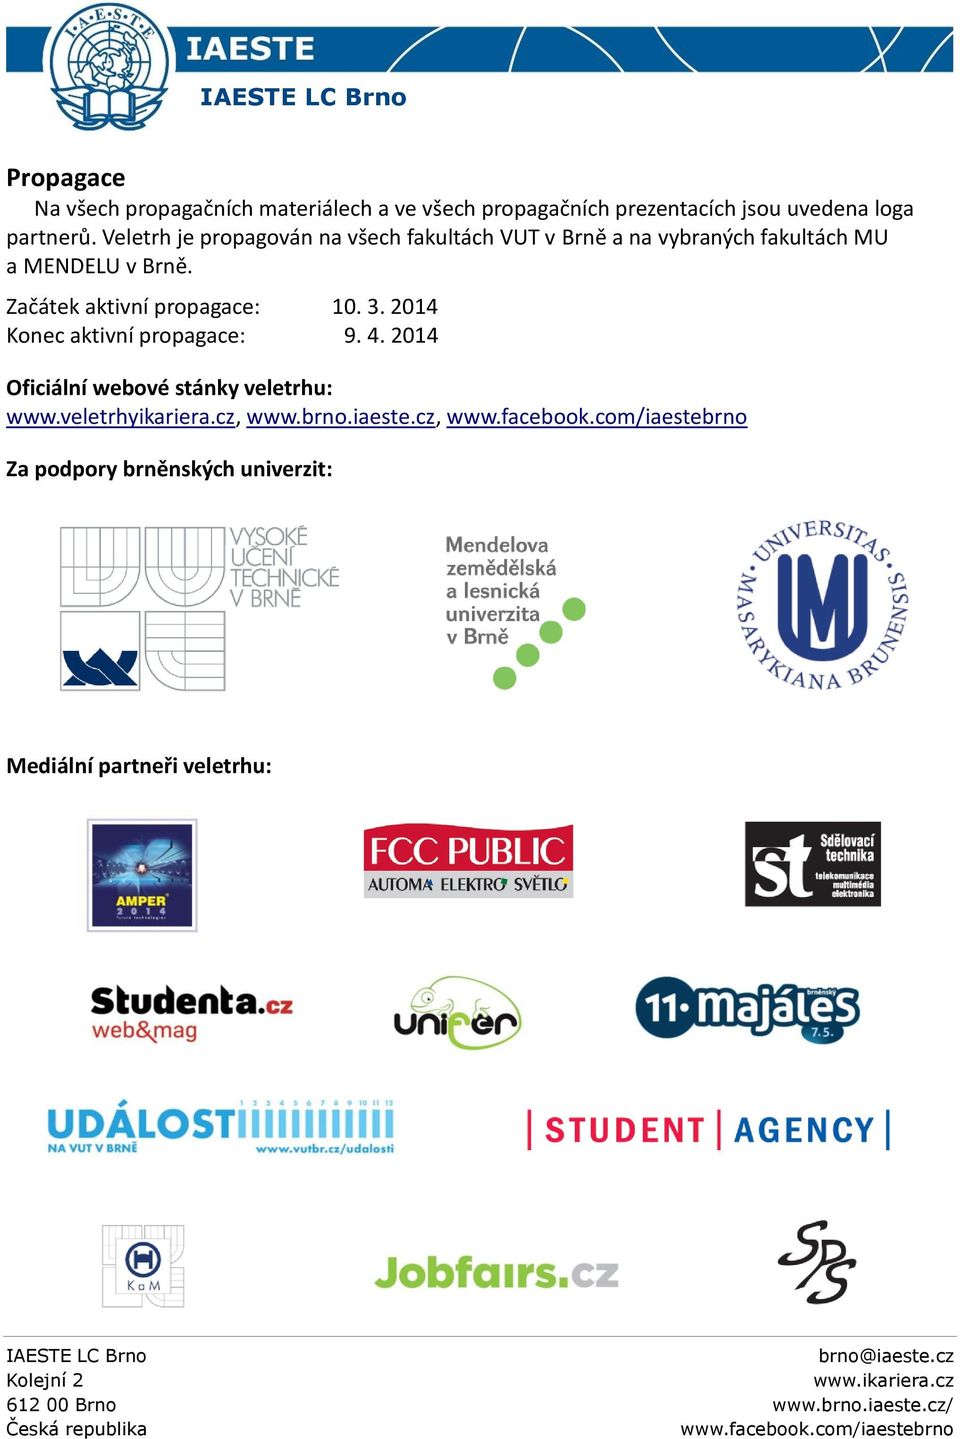 Veletrh je propagován na všech fakultách VUT v Brně a na vybraných fakultách MU a MENDELU v Brně.